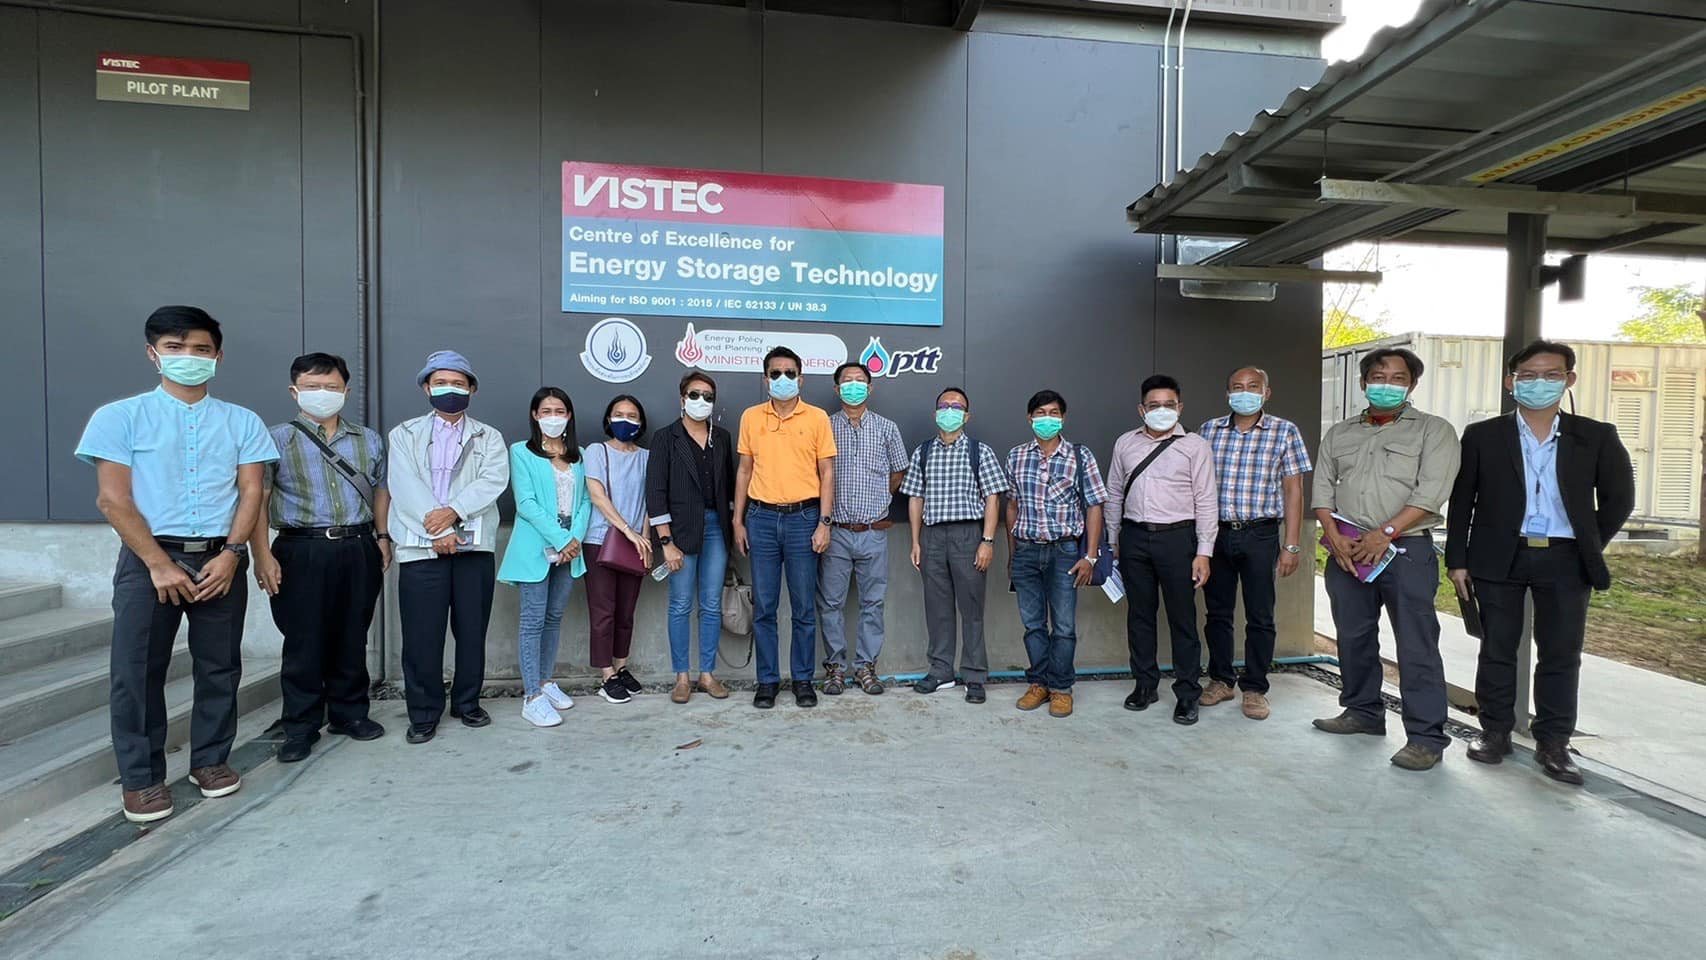 ศูนย์ความเป็นเลิศด้านเทคโนโลยีกักเก็บพลังงาน (CEST) ให้การต้อนรับ มหาวิทยาลัยสงขลานครินทร์ และคณะทำงาน CHPP ในโอกาสเข้าเยี่ยม สถาบันวิทยสิริเมธี (VISTEC) วันที่ 23-02-2565